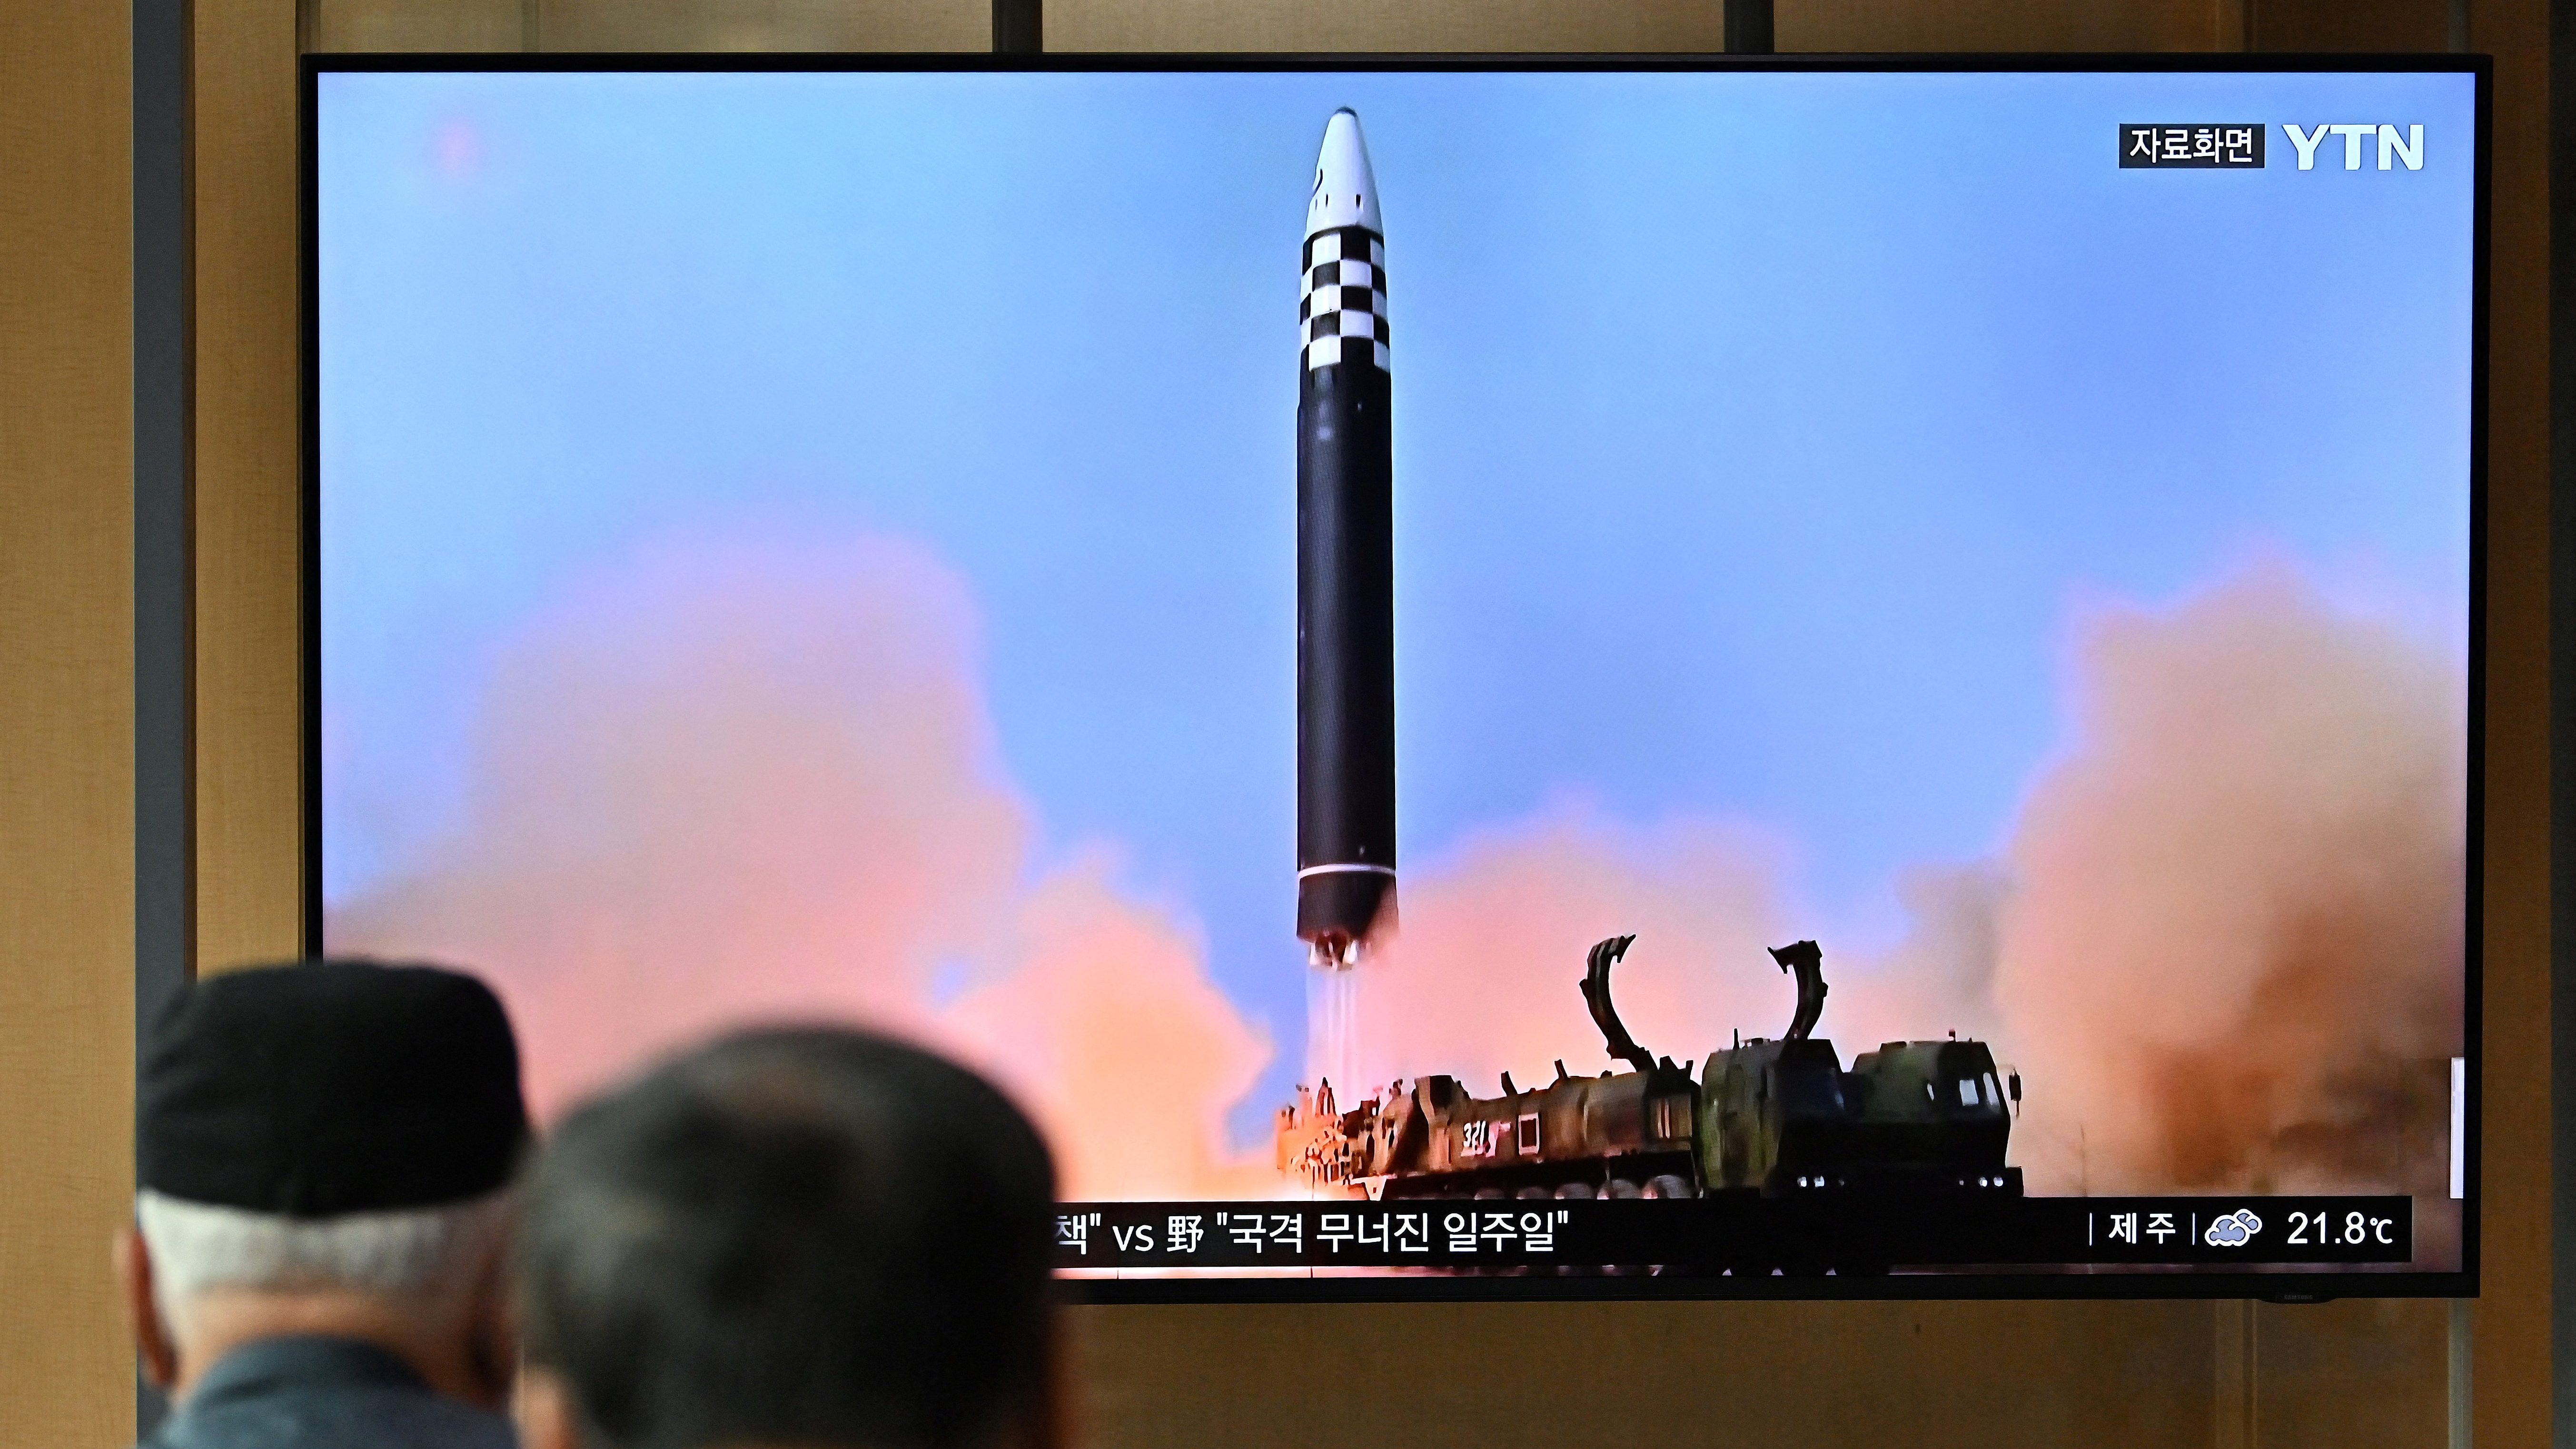 Észak-Korea újabb rakétakísérletet hajtott végre